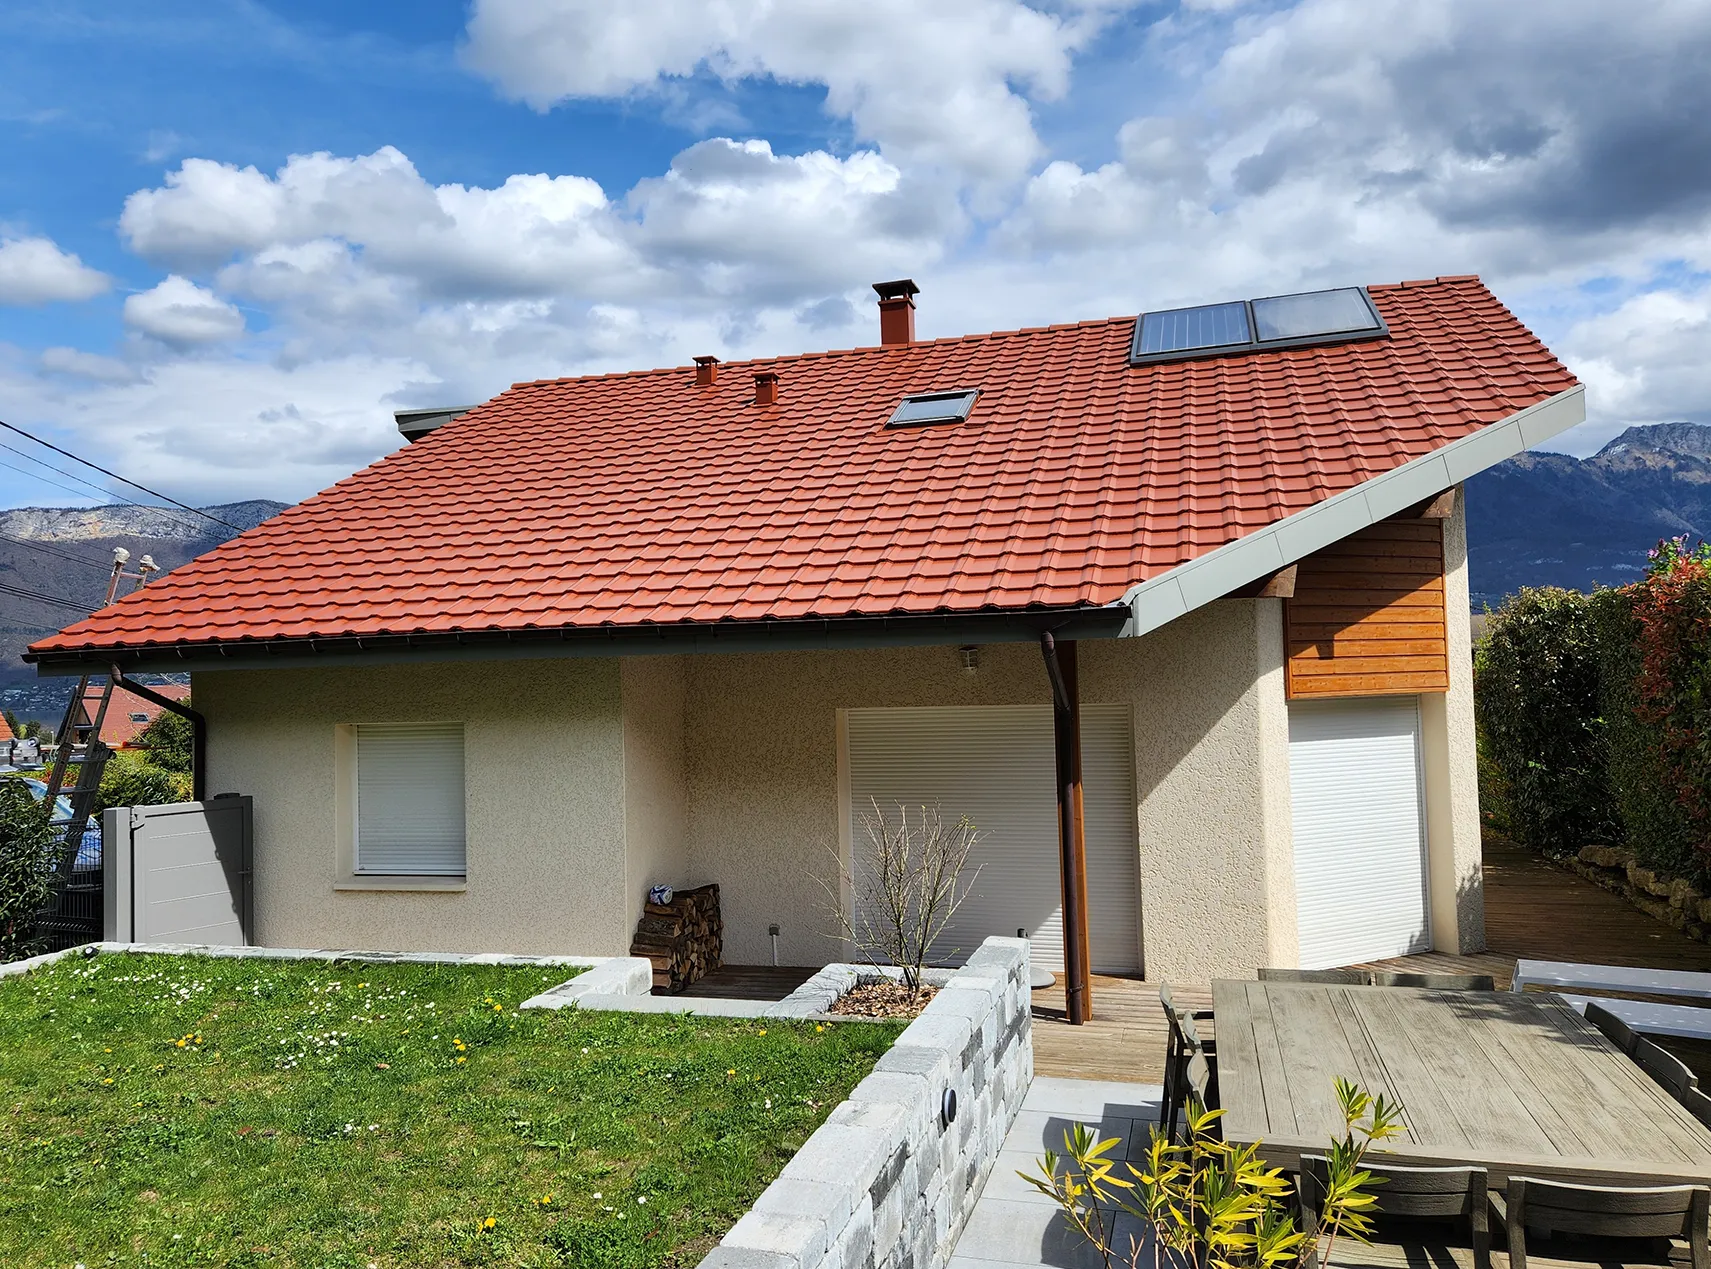 Traitement toiture en tuile-ciment à Sévrier en Haute-Savoie